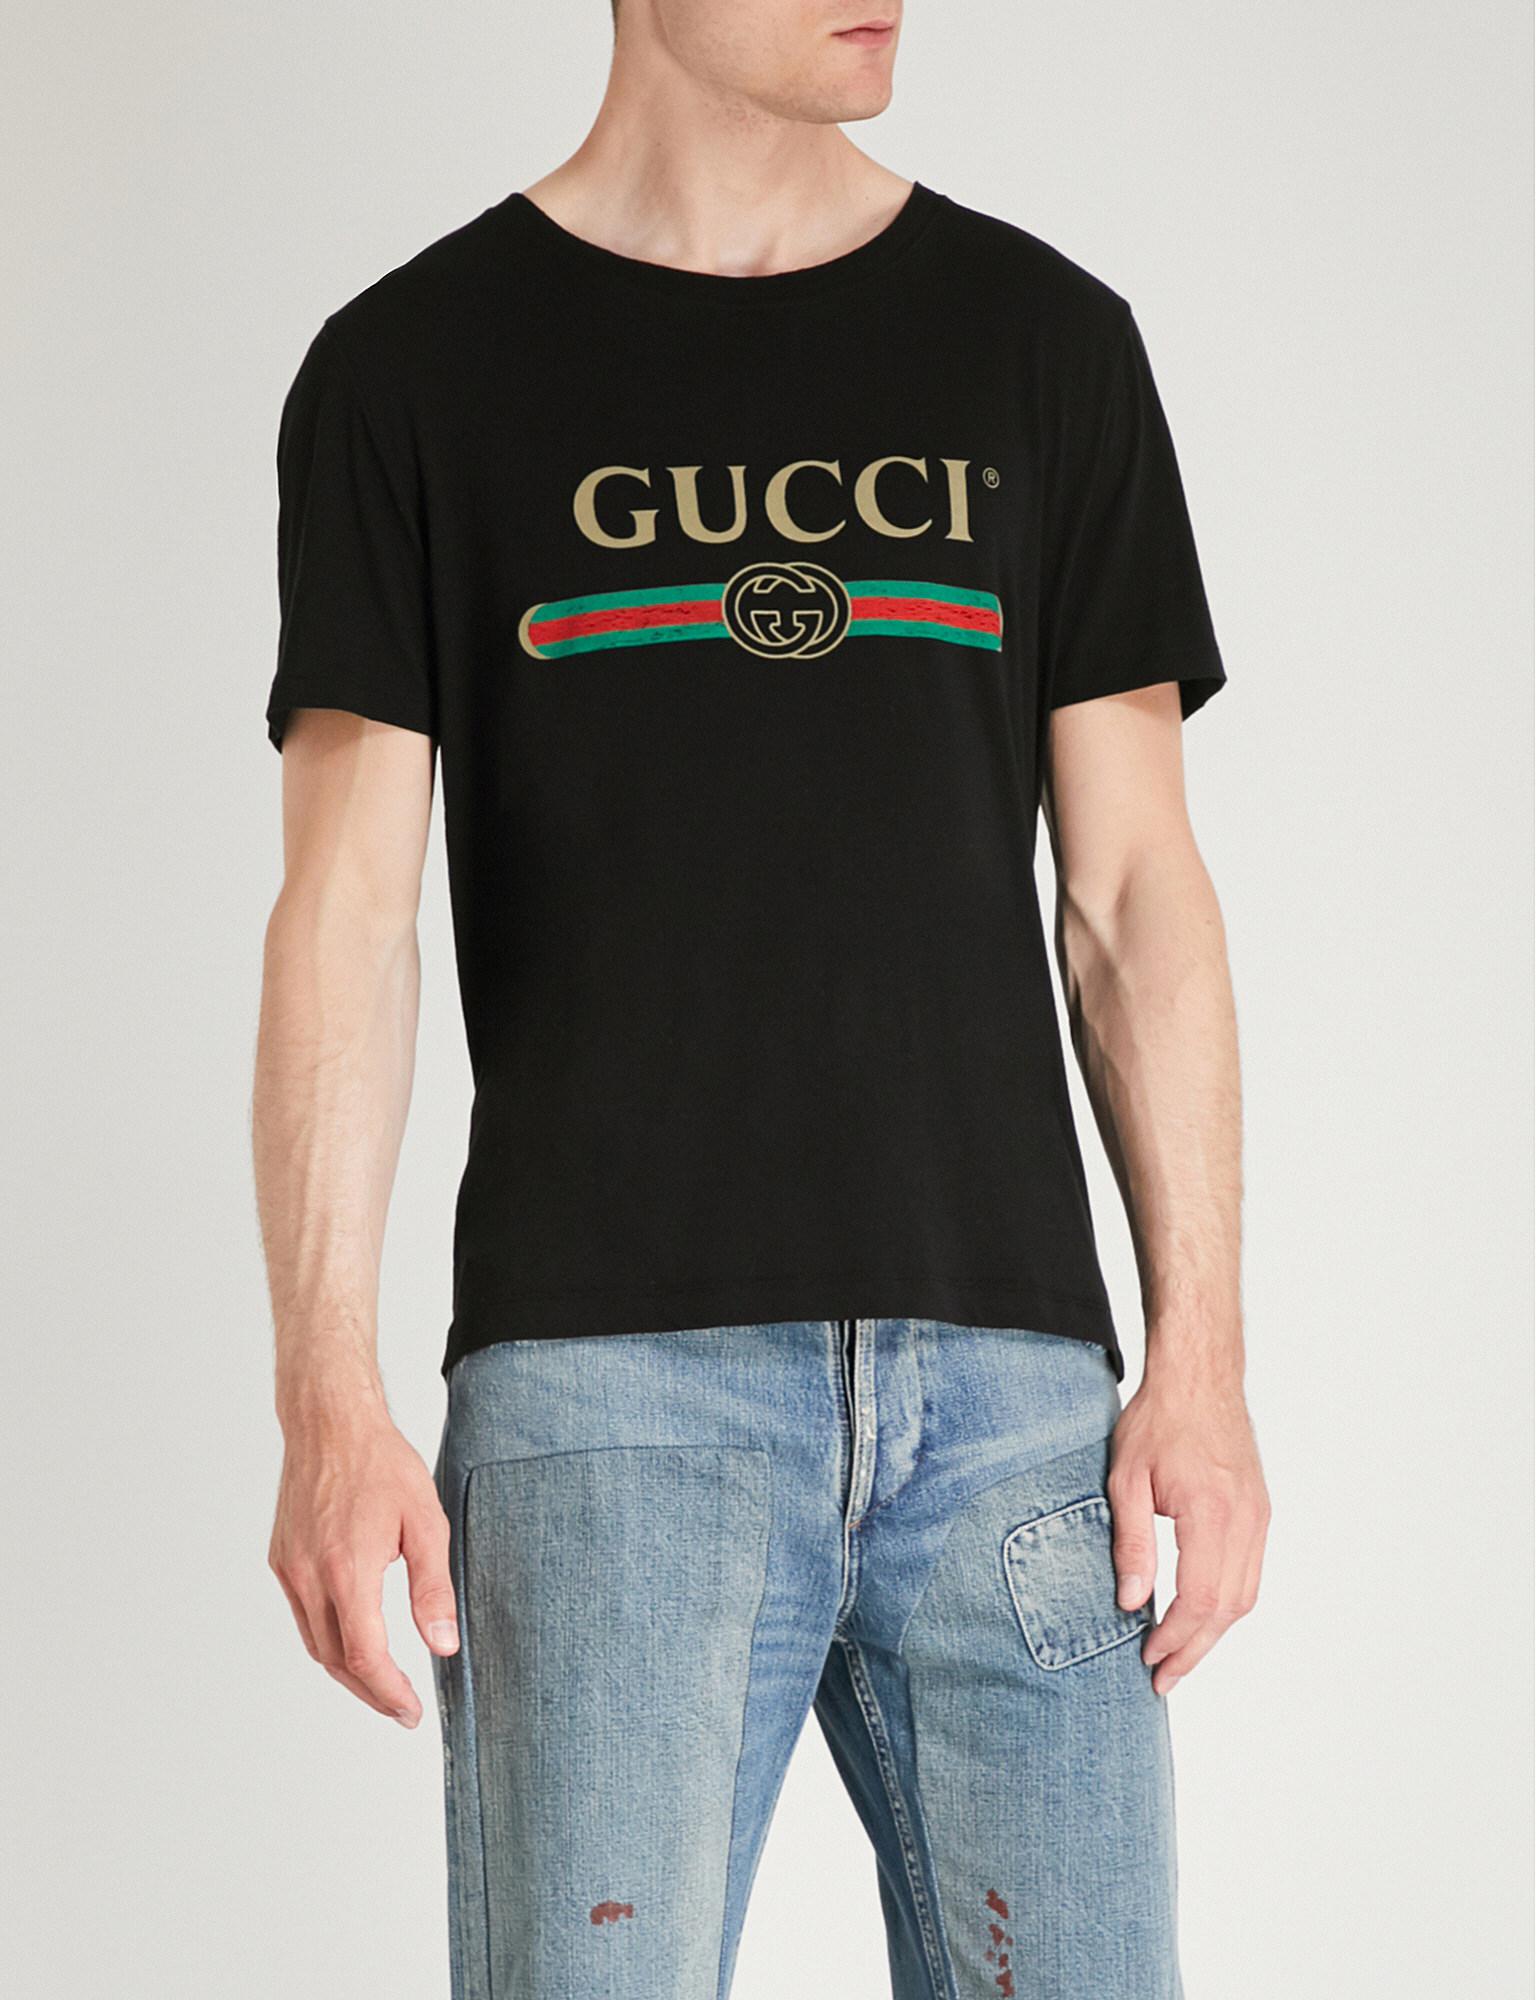 gucci copy t shirt